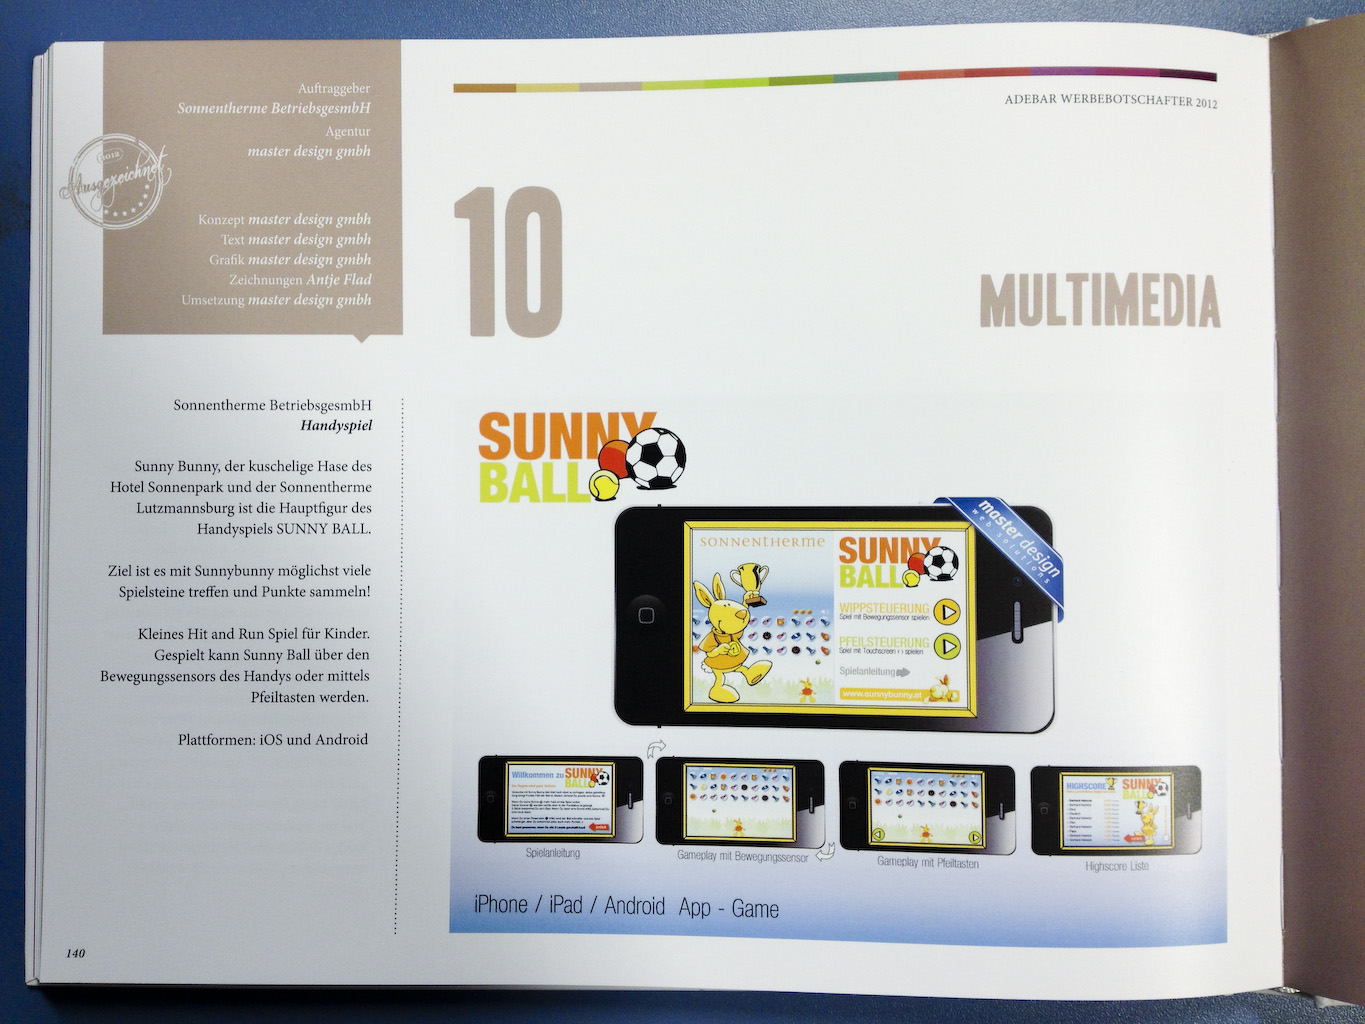 Ausgezeichnete Werbung für das Sunny Bunny Handygame "SUNNY BALL" - Auftraggeber: Sonnentherme Lutzmannsburg